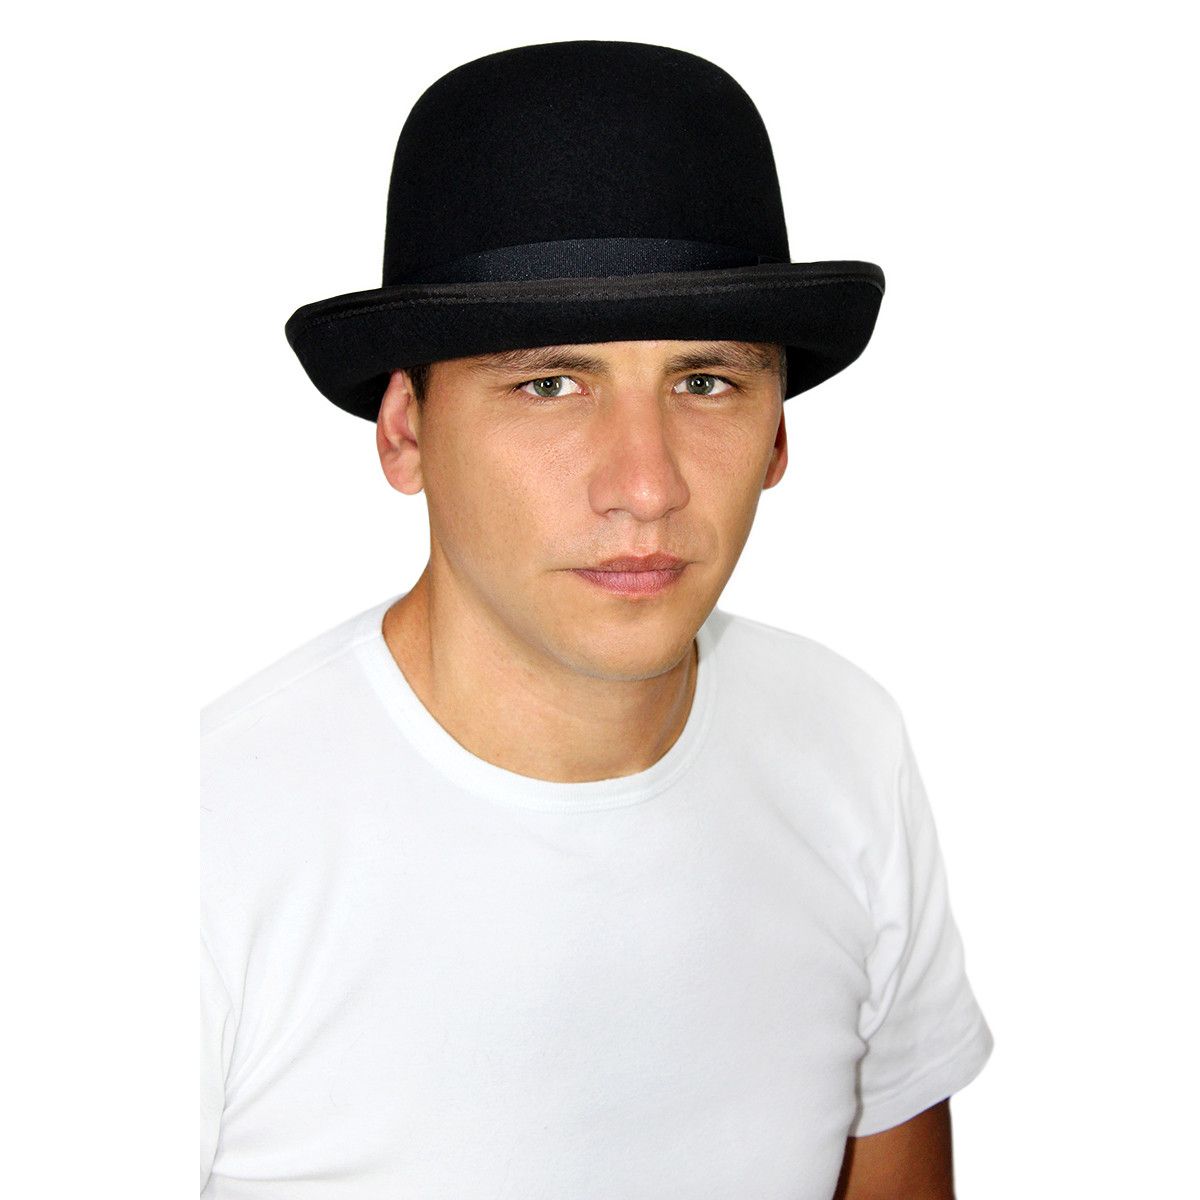 Мужская шляпа сканворд 7. Золла шляпа мужская. Шляпа мужская летняя. Фетровая летняя шляпа мужская. Шляпа Федора мужская летняя.